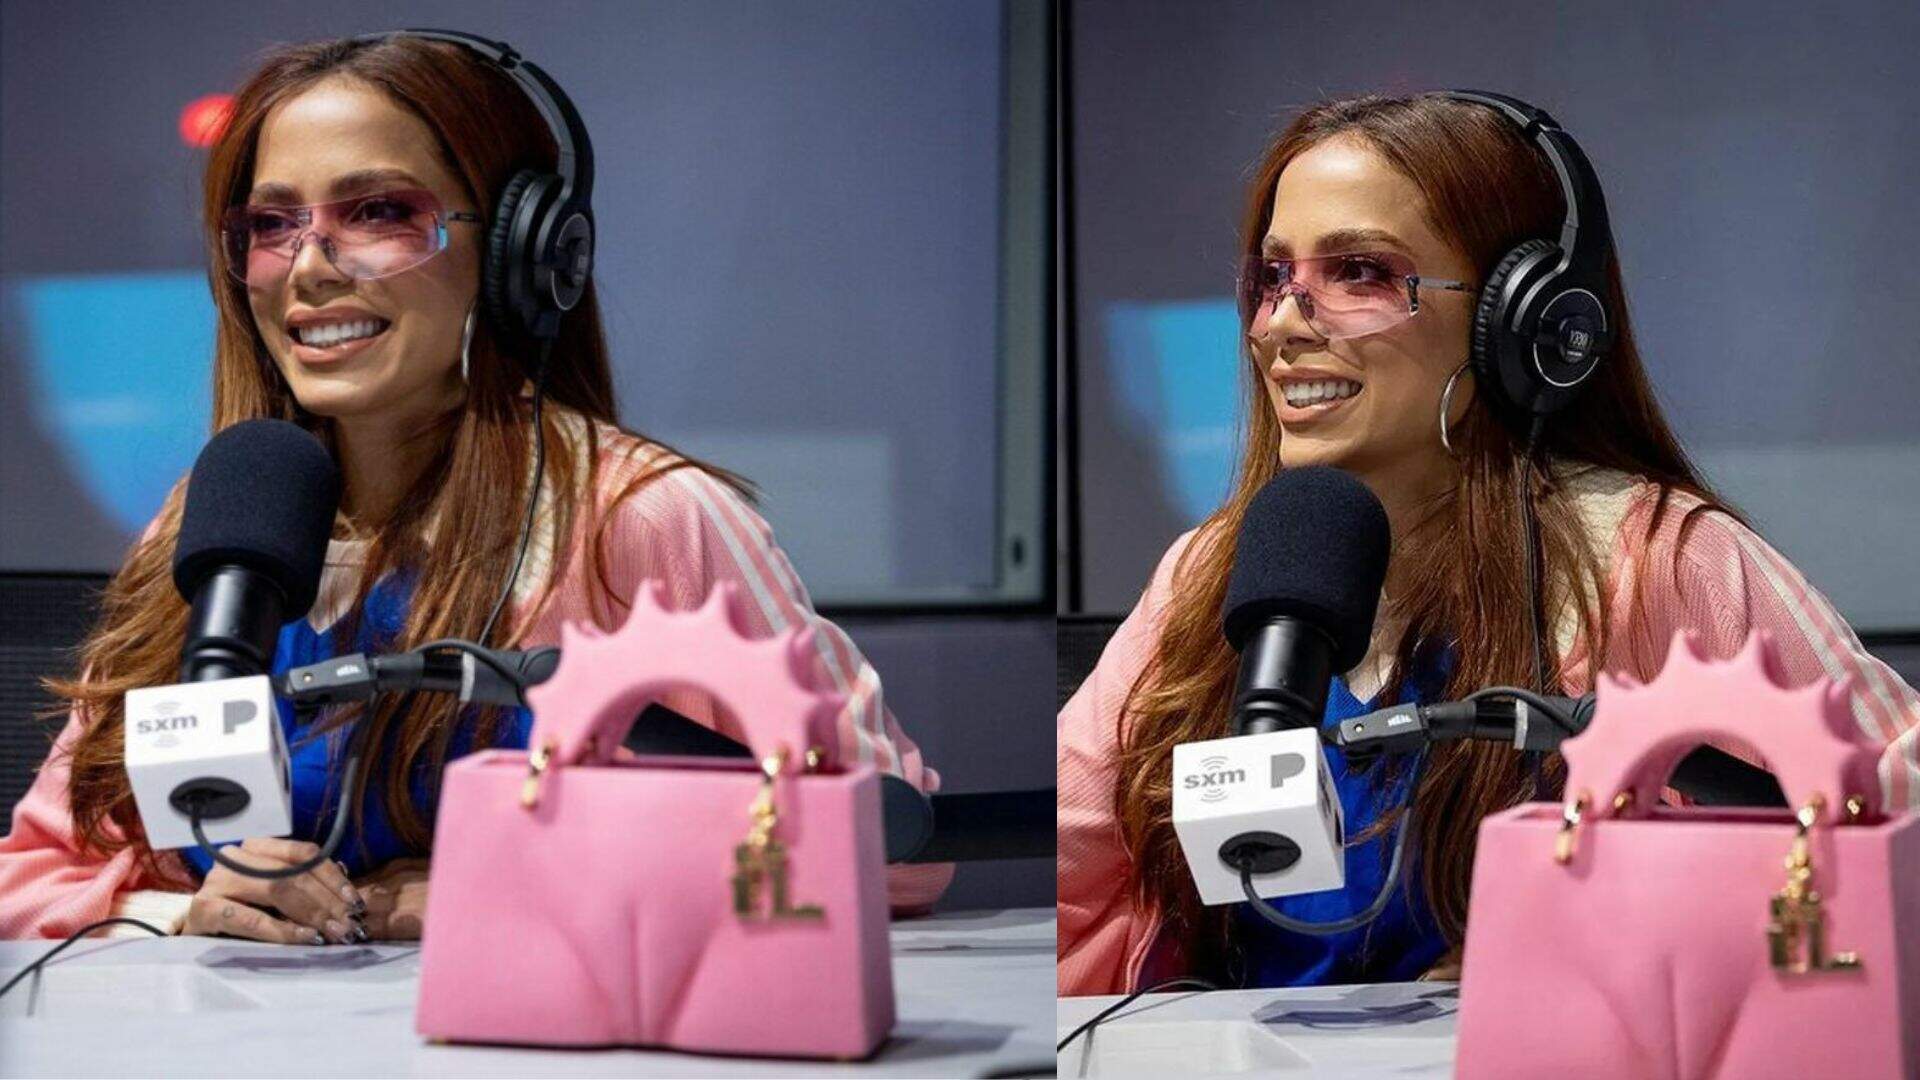 Em entrevista, Anitta relembra tatuagem no c* e expõe detalhes: “Na frente do pai e na bunda?” - Metropolitana FM